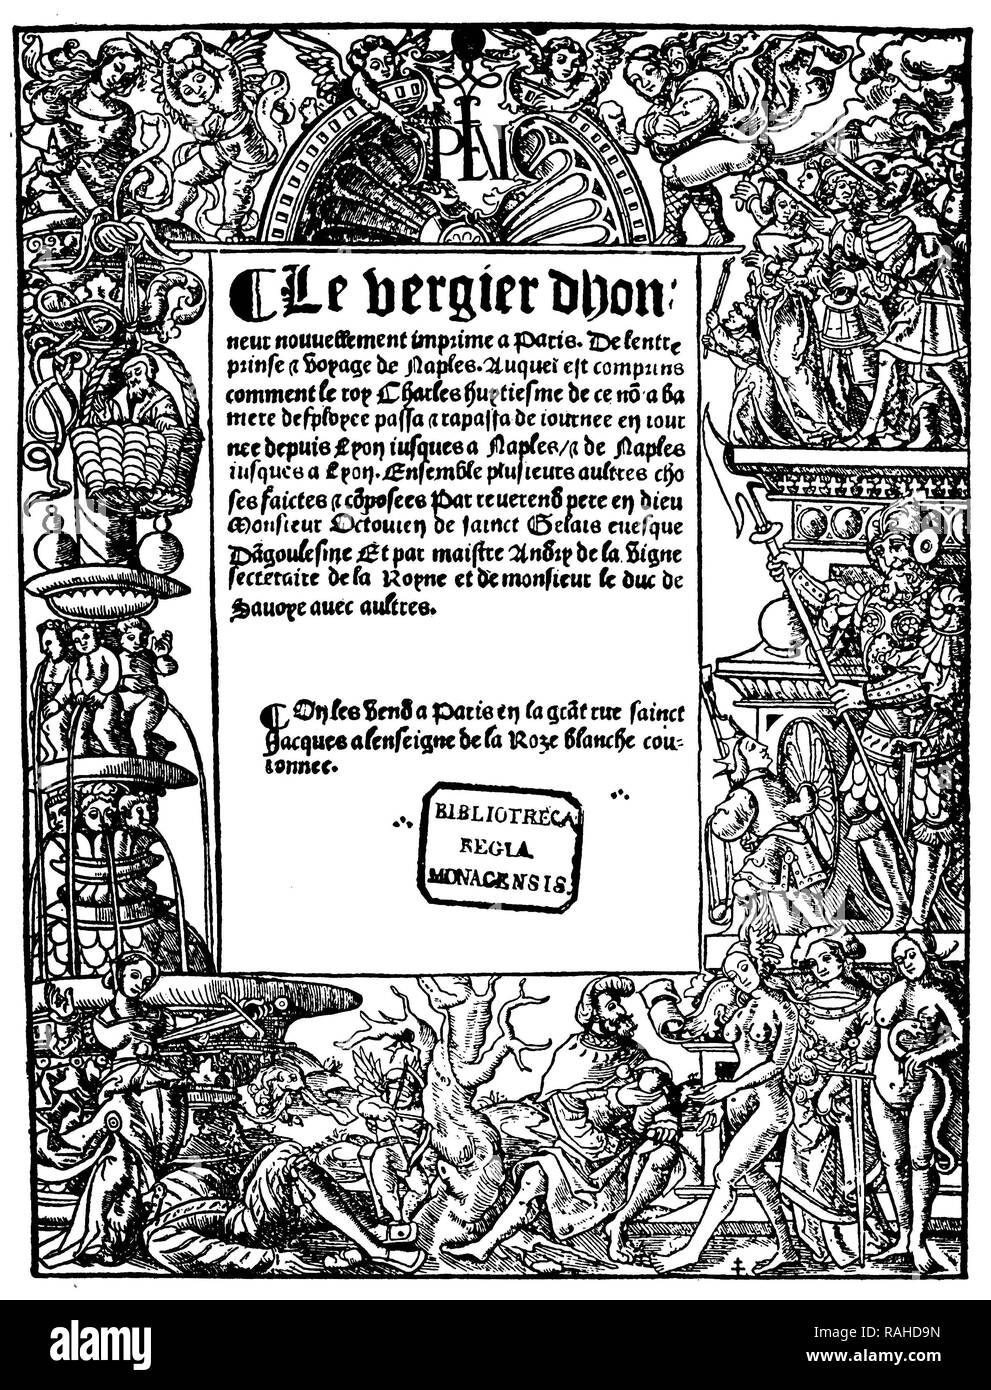 Titolo pagina di un libro, framing illustrazione della leggenda di Virgilio la vendetta e il verdetto di Parigi, circa 1700 Foto Stock